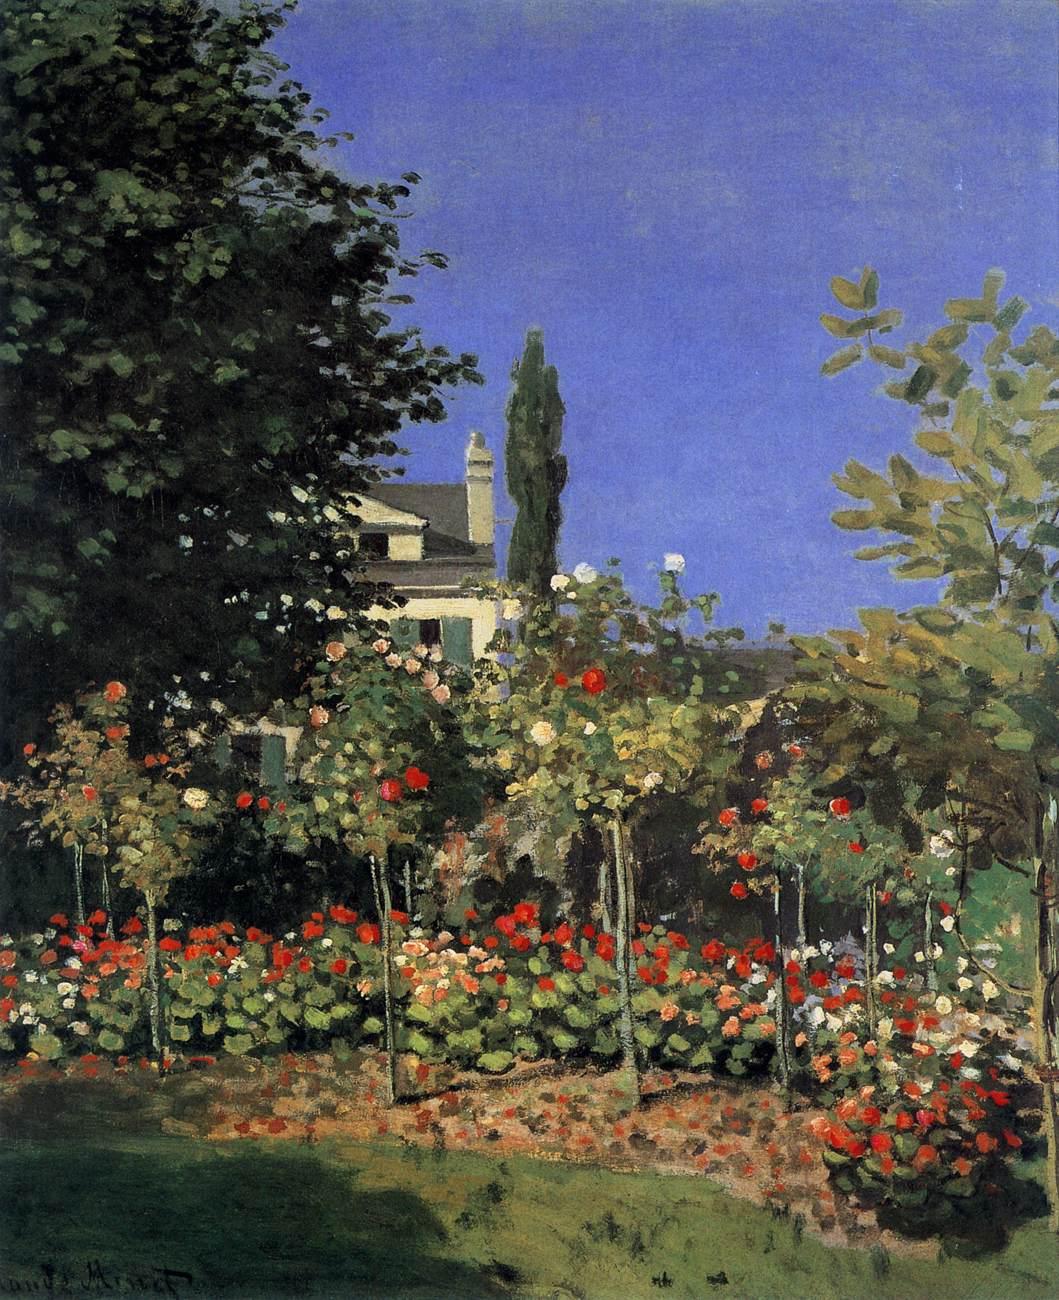 印象派画家莫奈花园题材的油画作品高清大图《酒店花园》